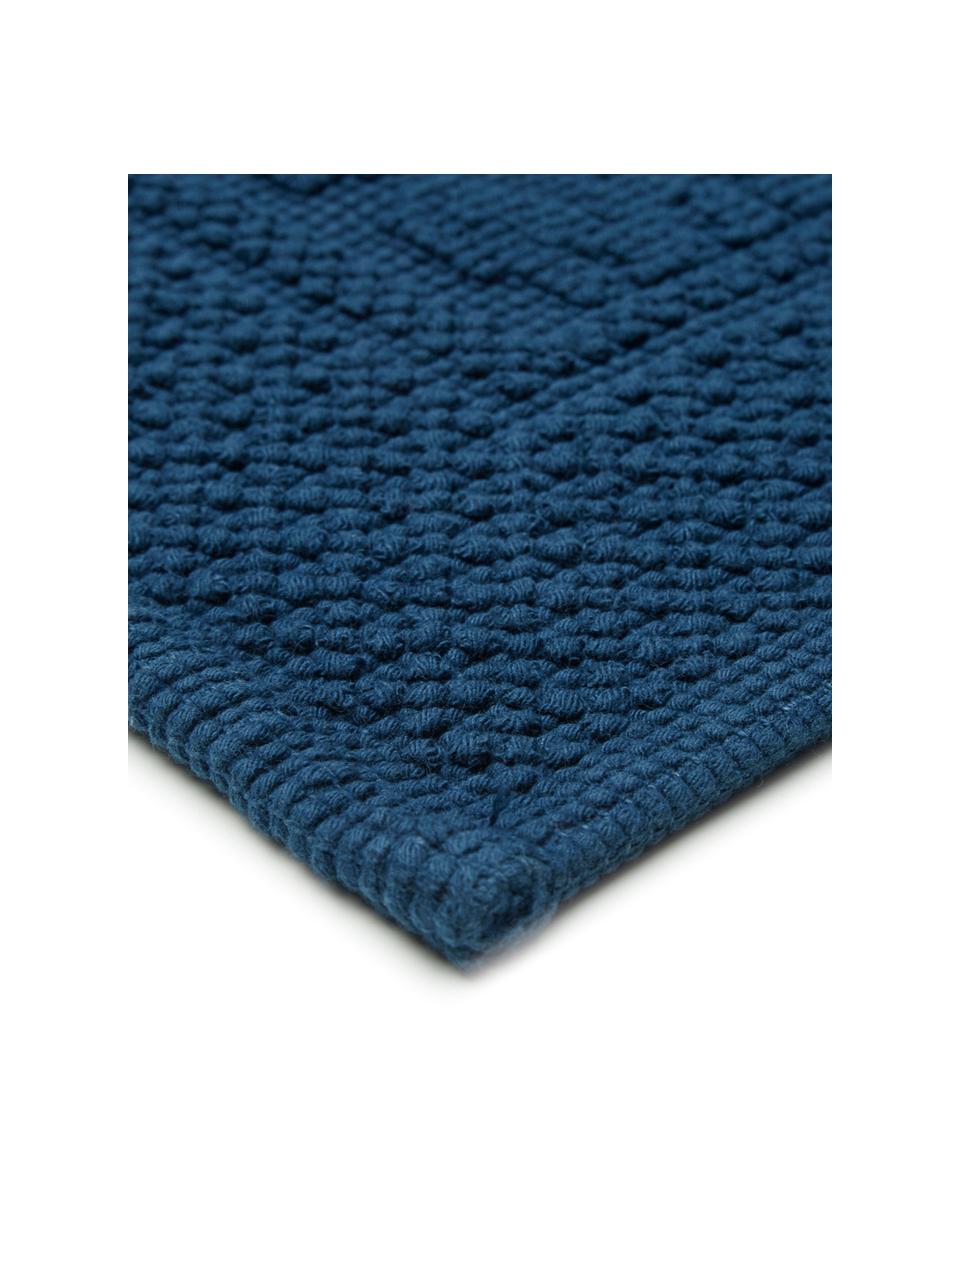 Baumwoll-Badvorleger Hammam mit Hoch-Tief-Muster, 100% Baumwolle, schwere Qualität, 1700 g/m², Dunkelblau, 60 x 80 cm